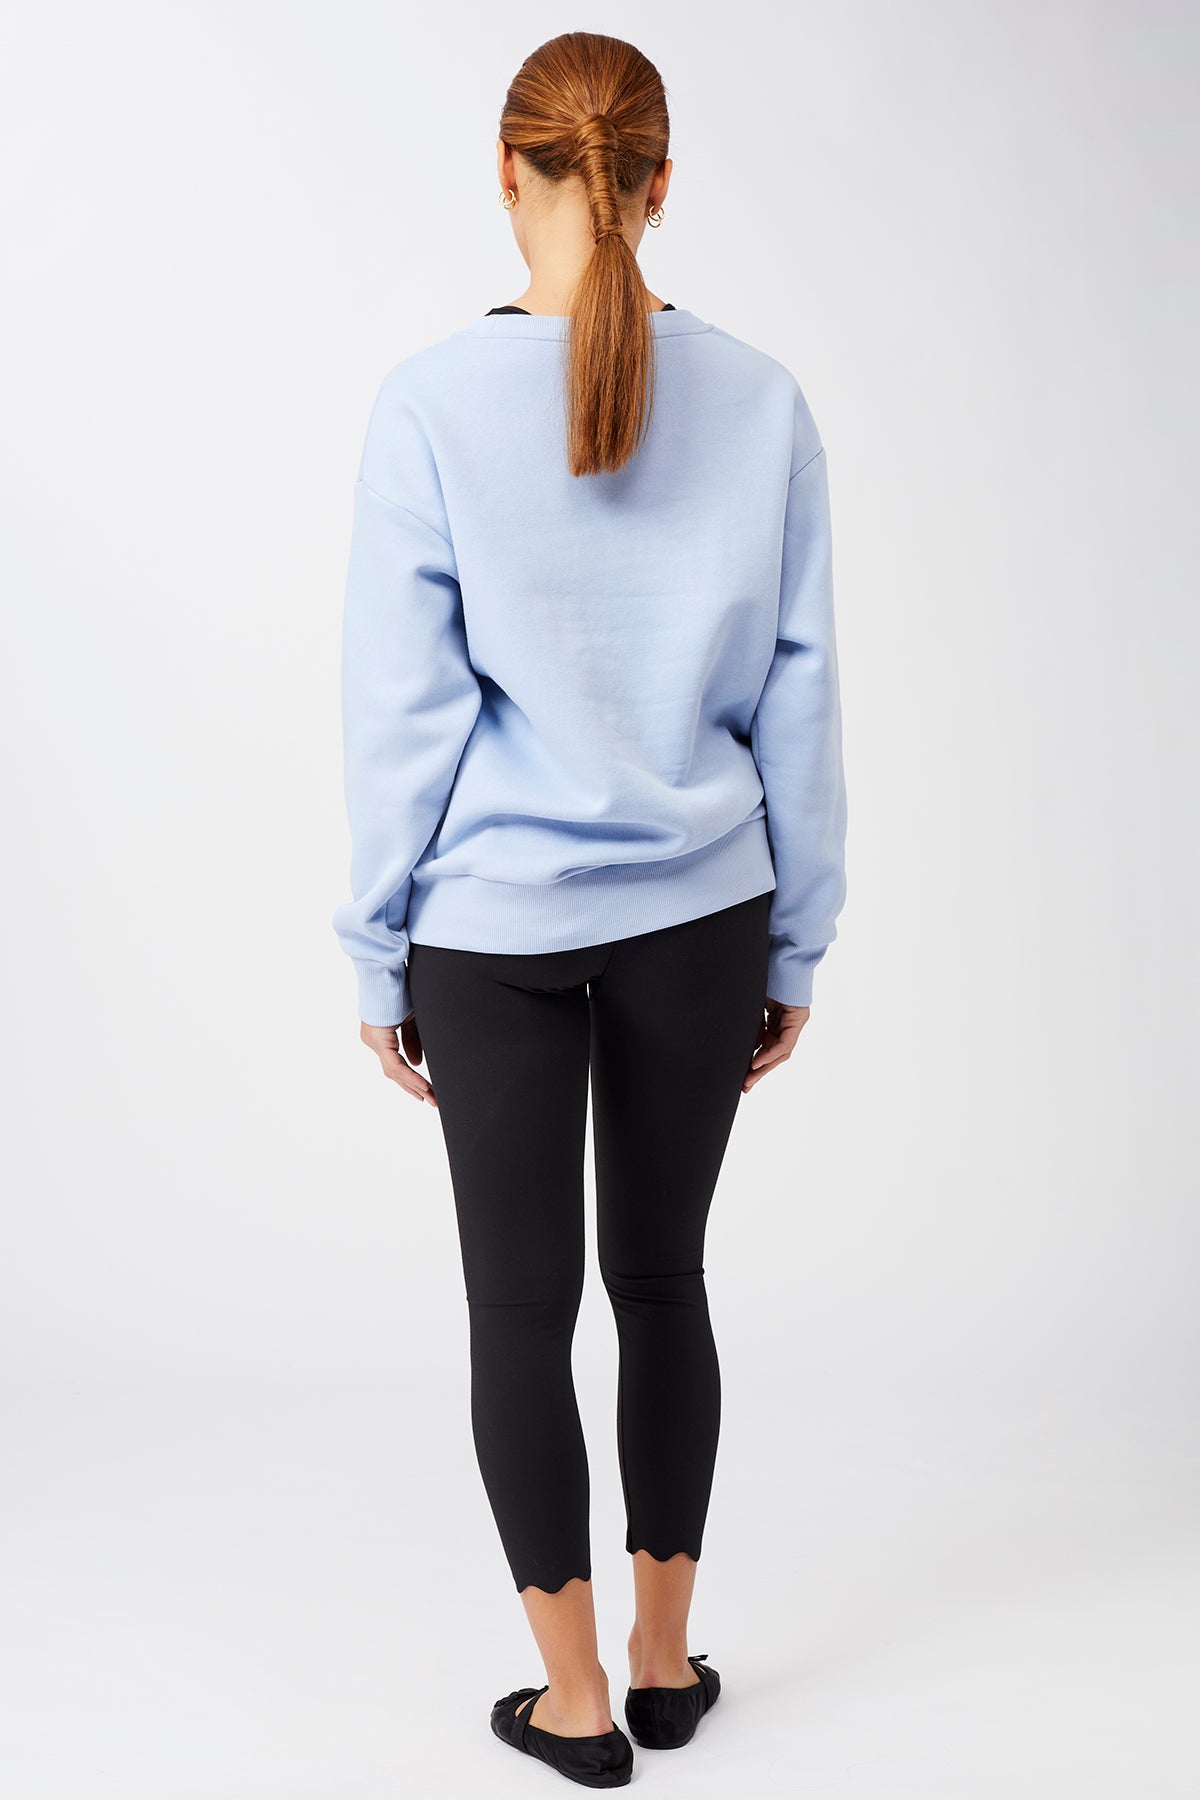 Mandala Yoga Pullover Blau Outfit Rückseite - Peace Sweater